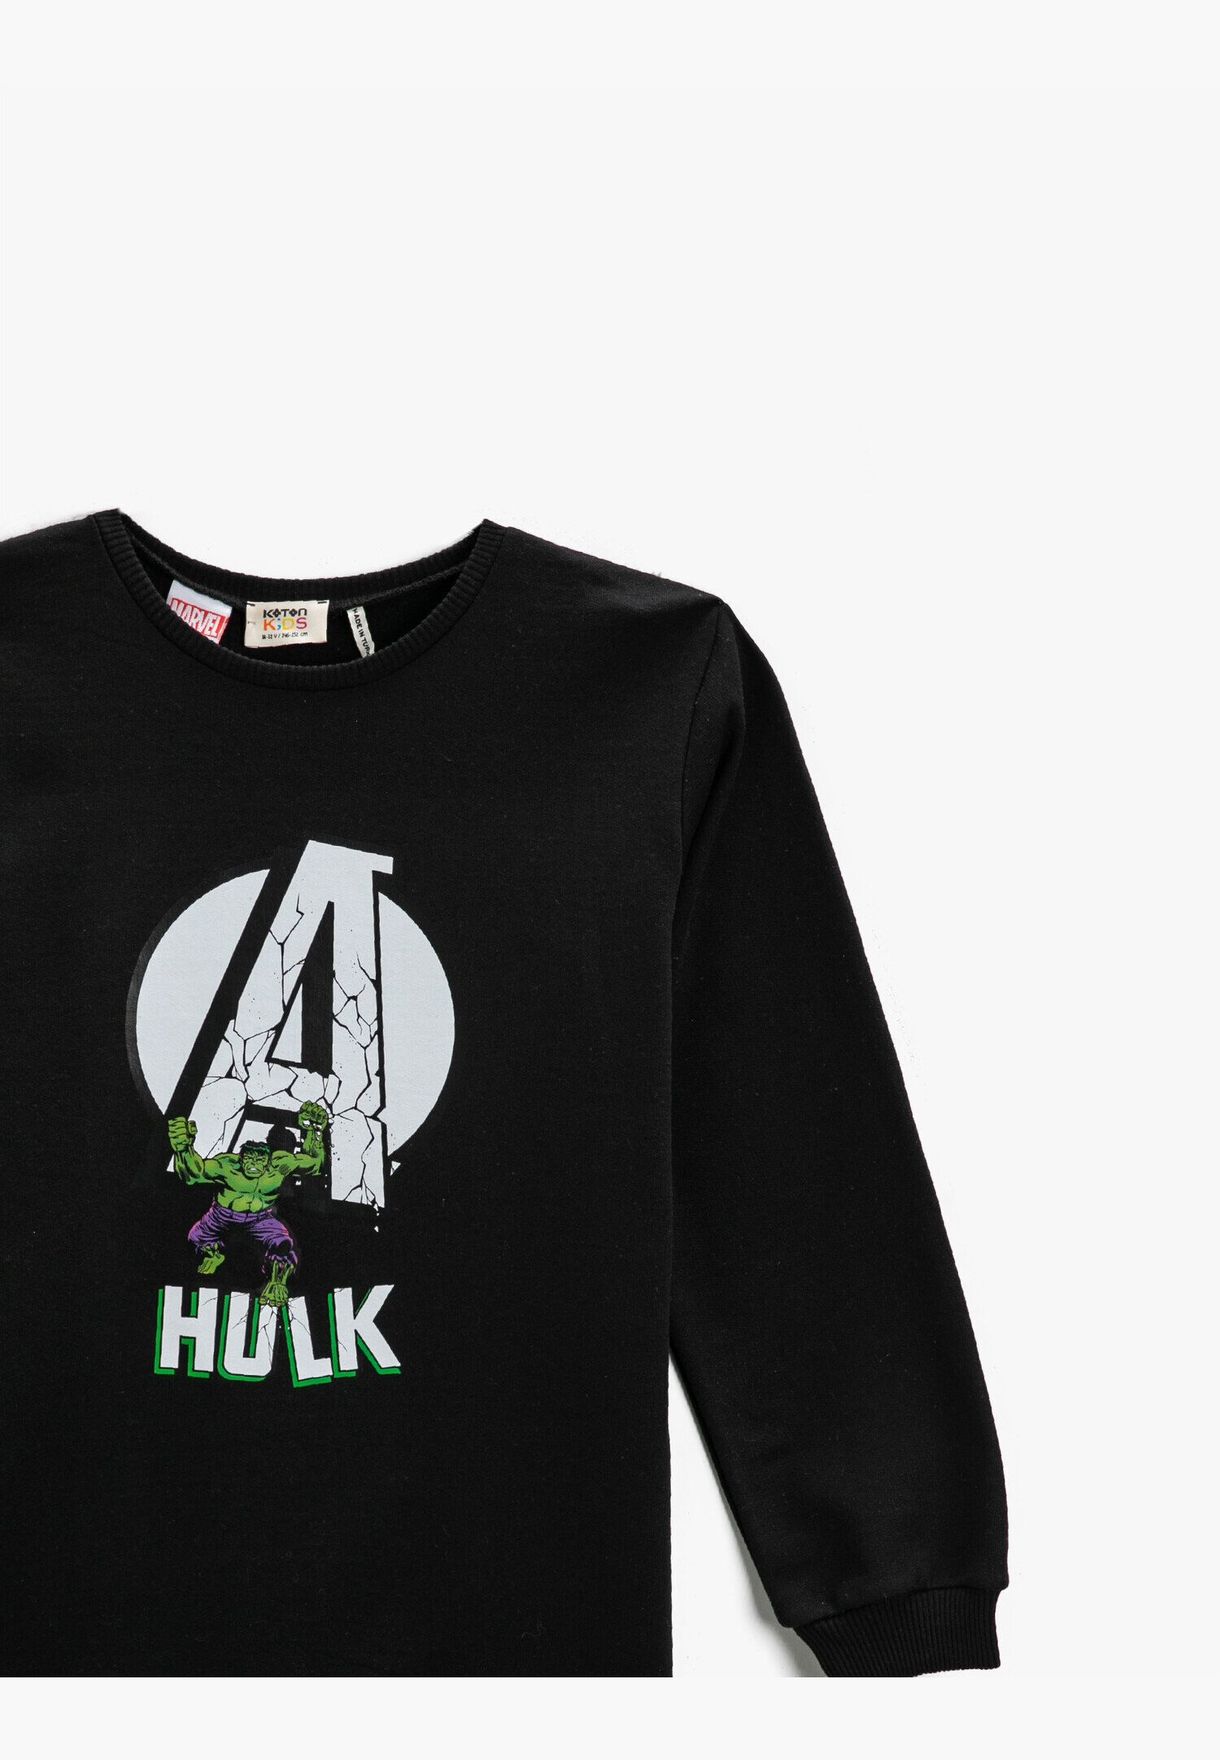 Hulk Licensed Printed Sweatshirt Long Sleeve